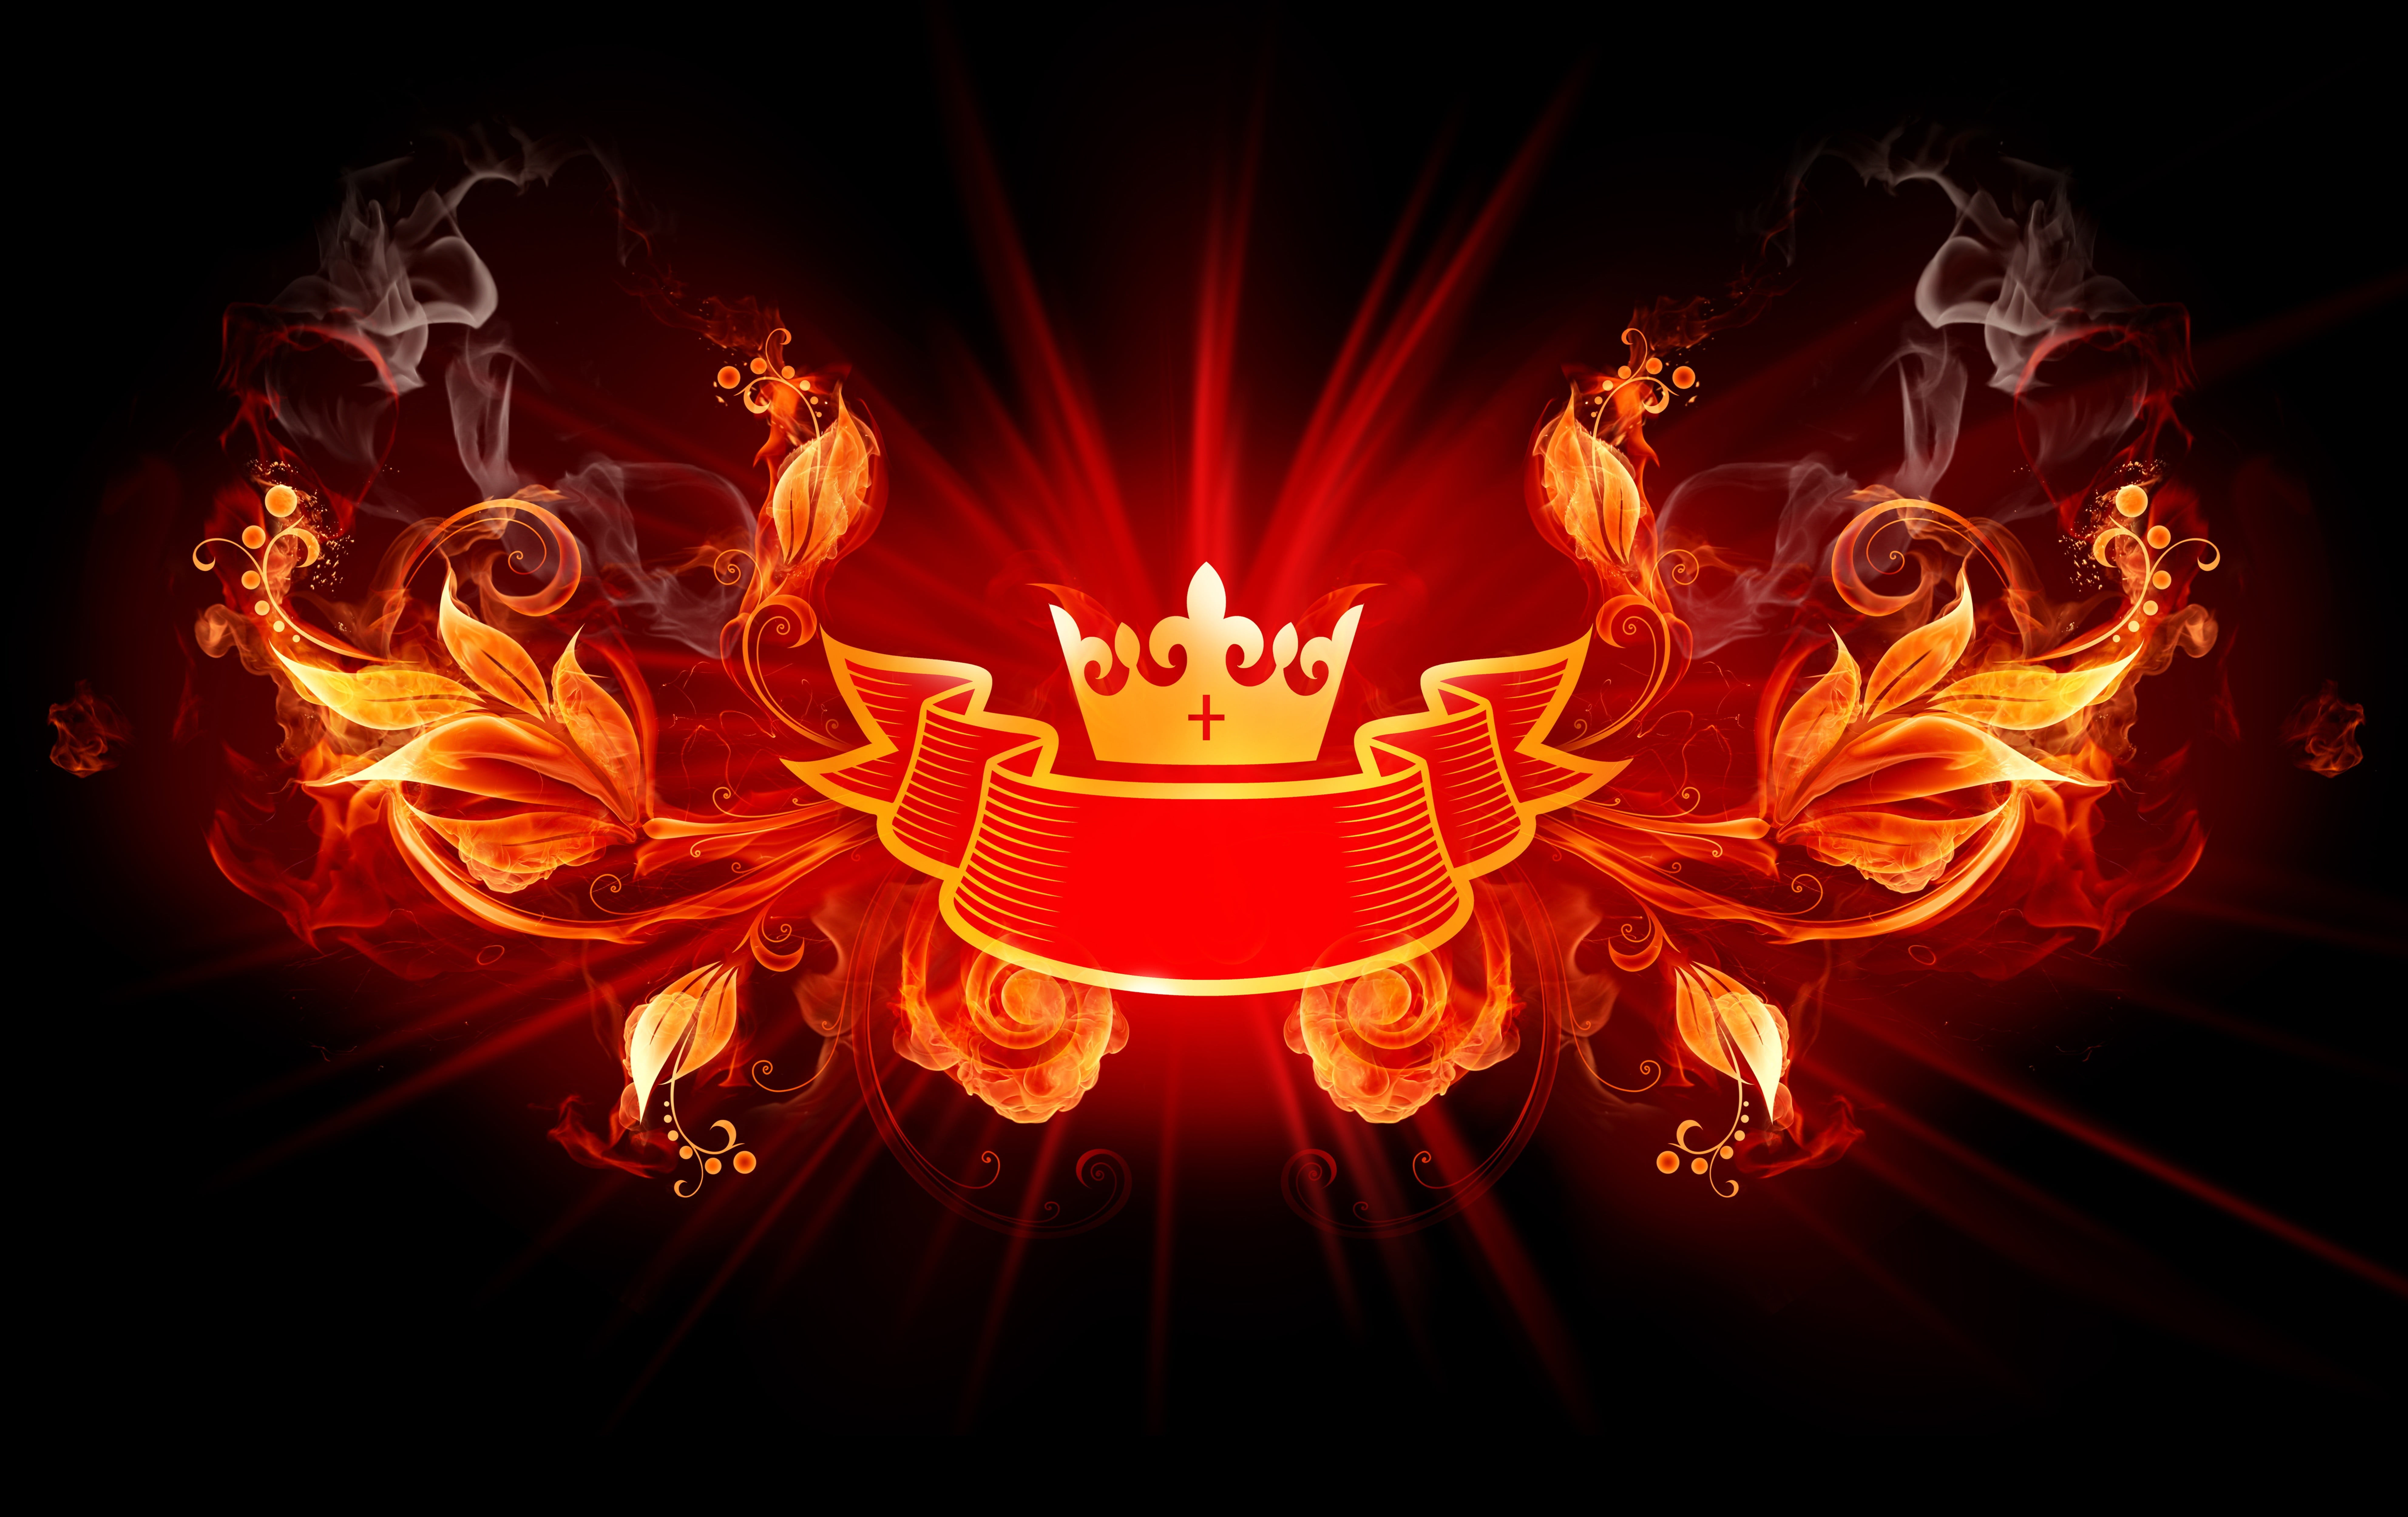 orange floral ribbon illustration, digital art, fire, crown, burning